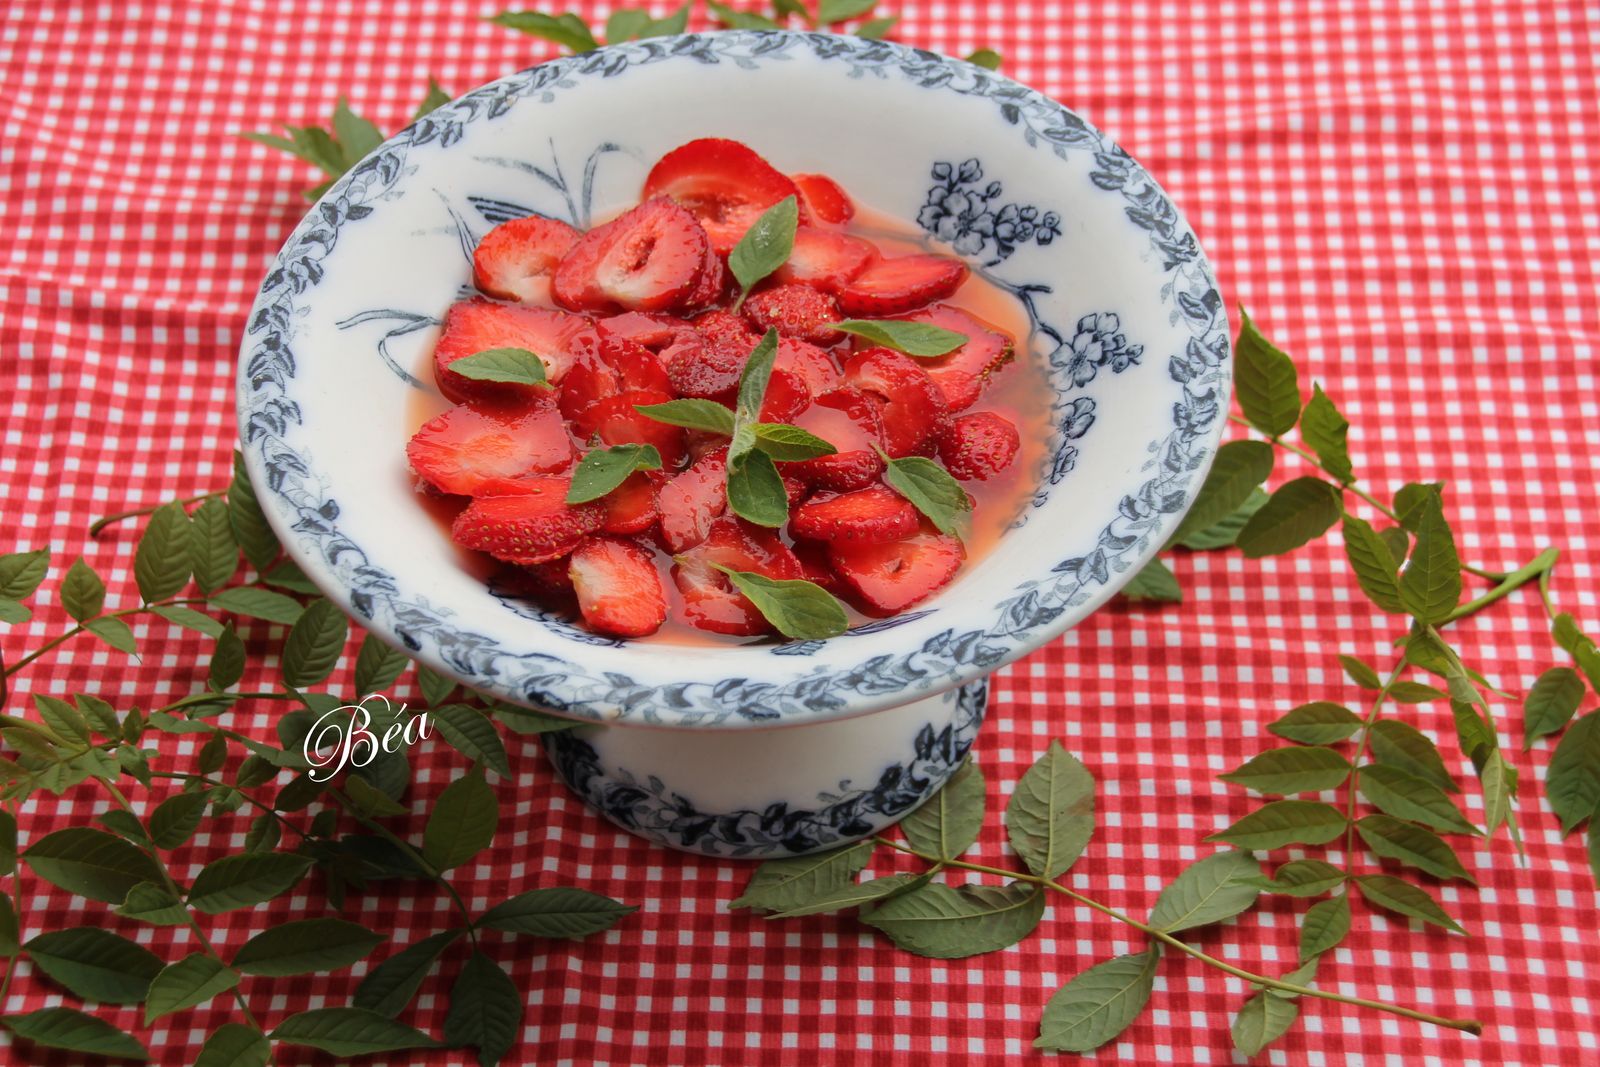 Salade de fraises aux agrumes et fleurs d'oranger